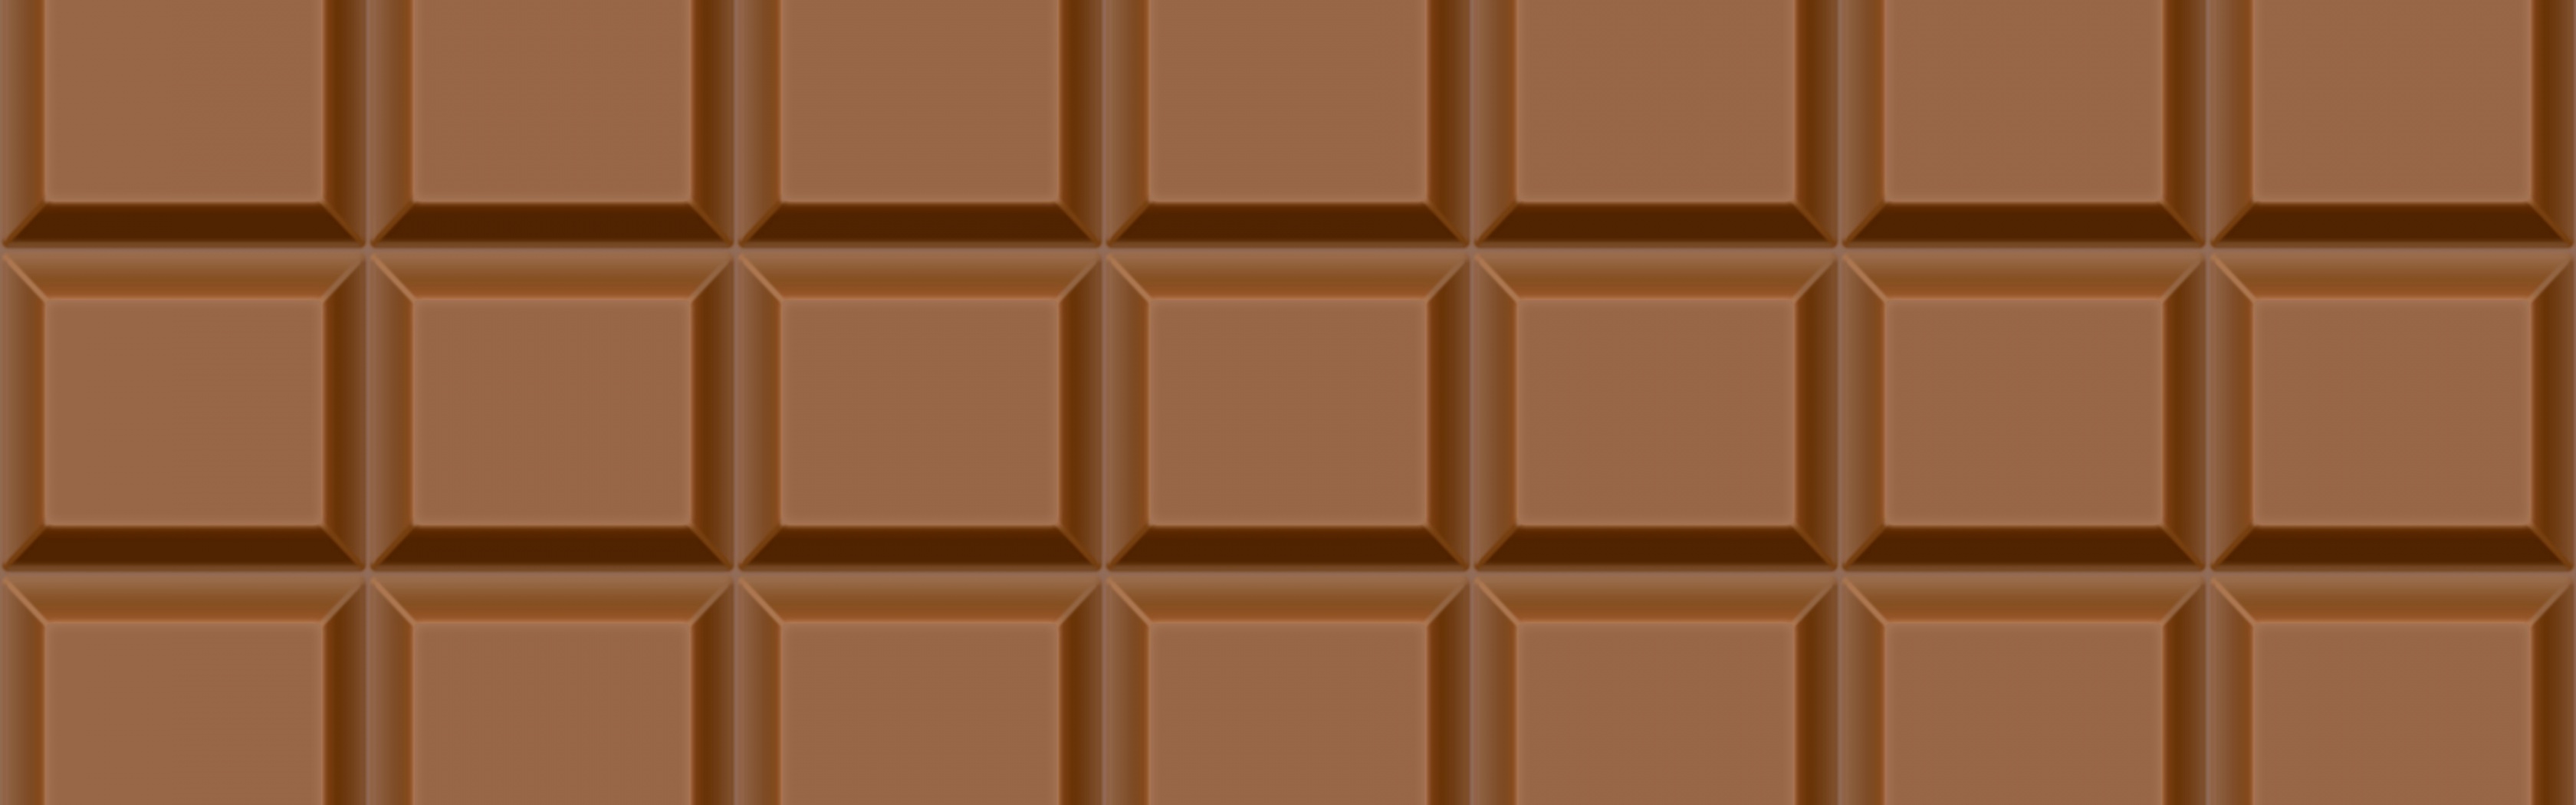 3D Chocolate